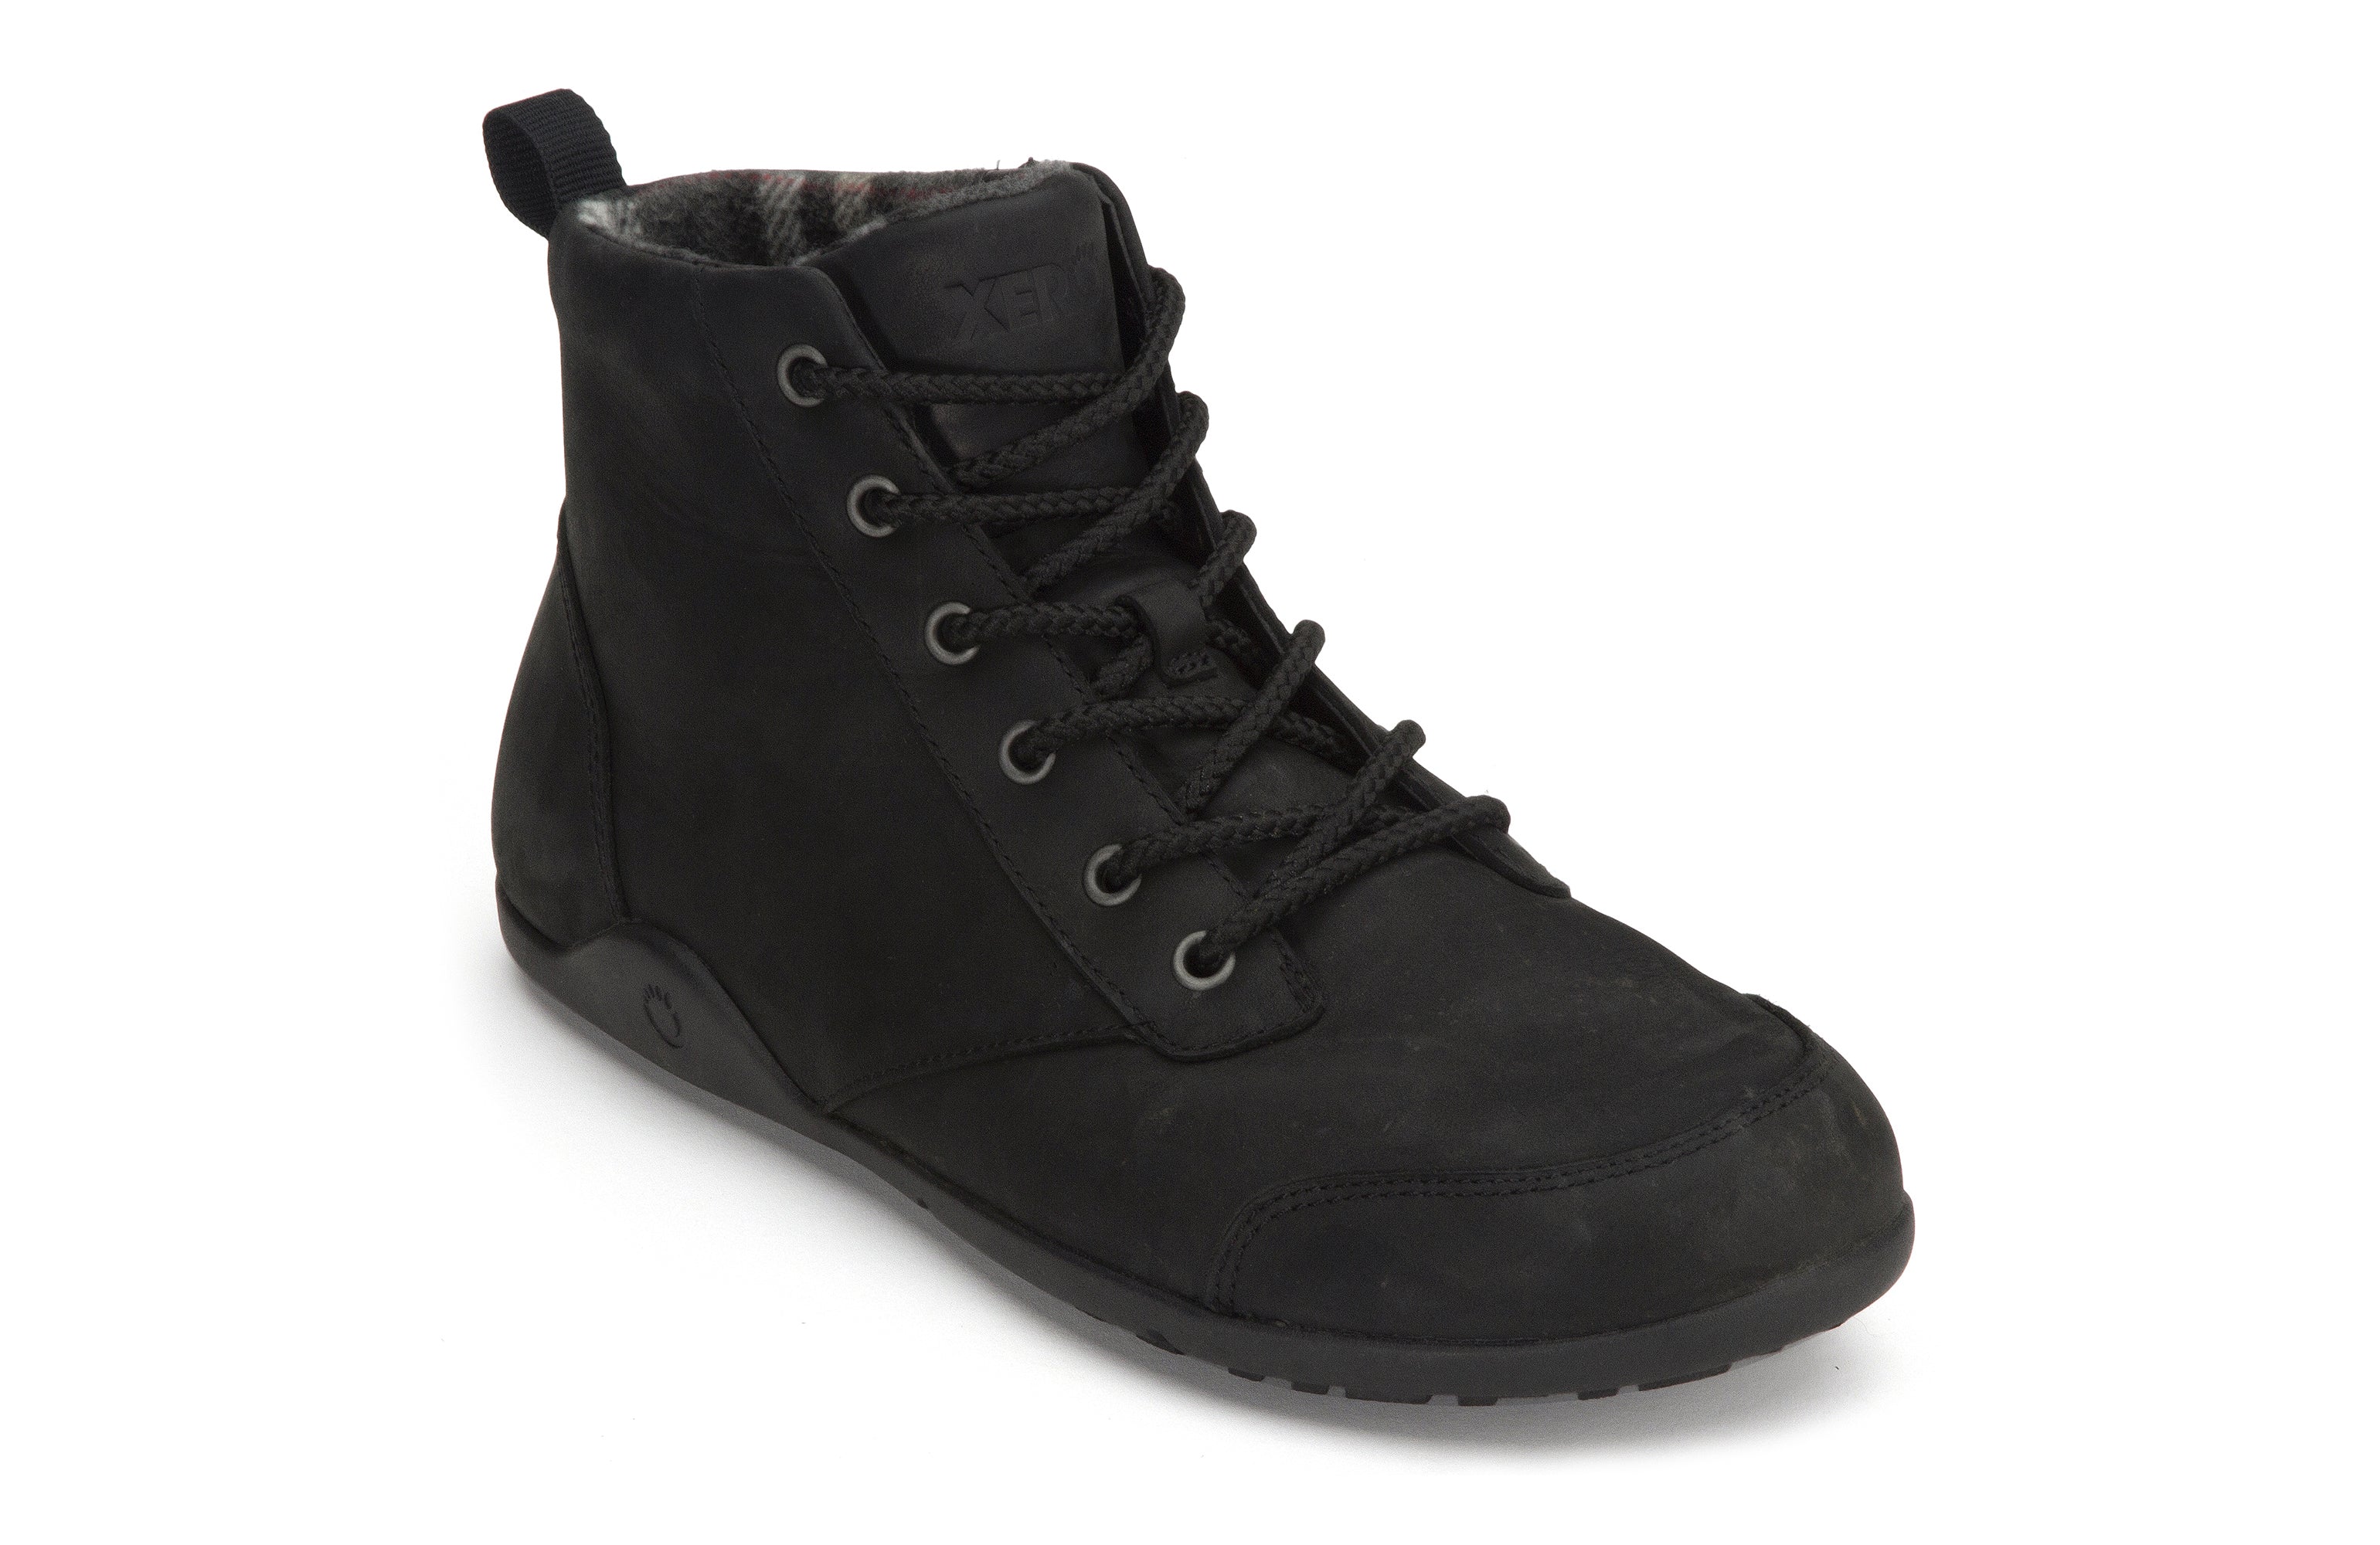 Xero Shoes Denver Leather barfods vinterstøvler til mænd i farven black, vinklet